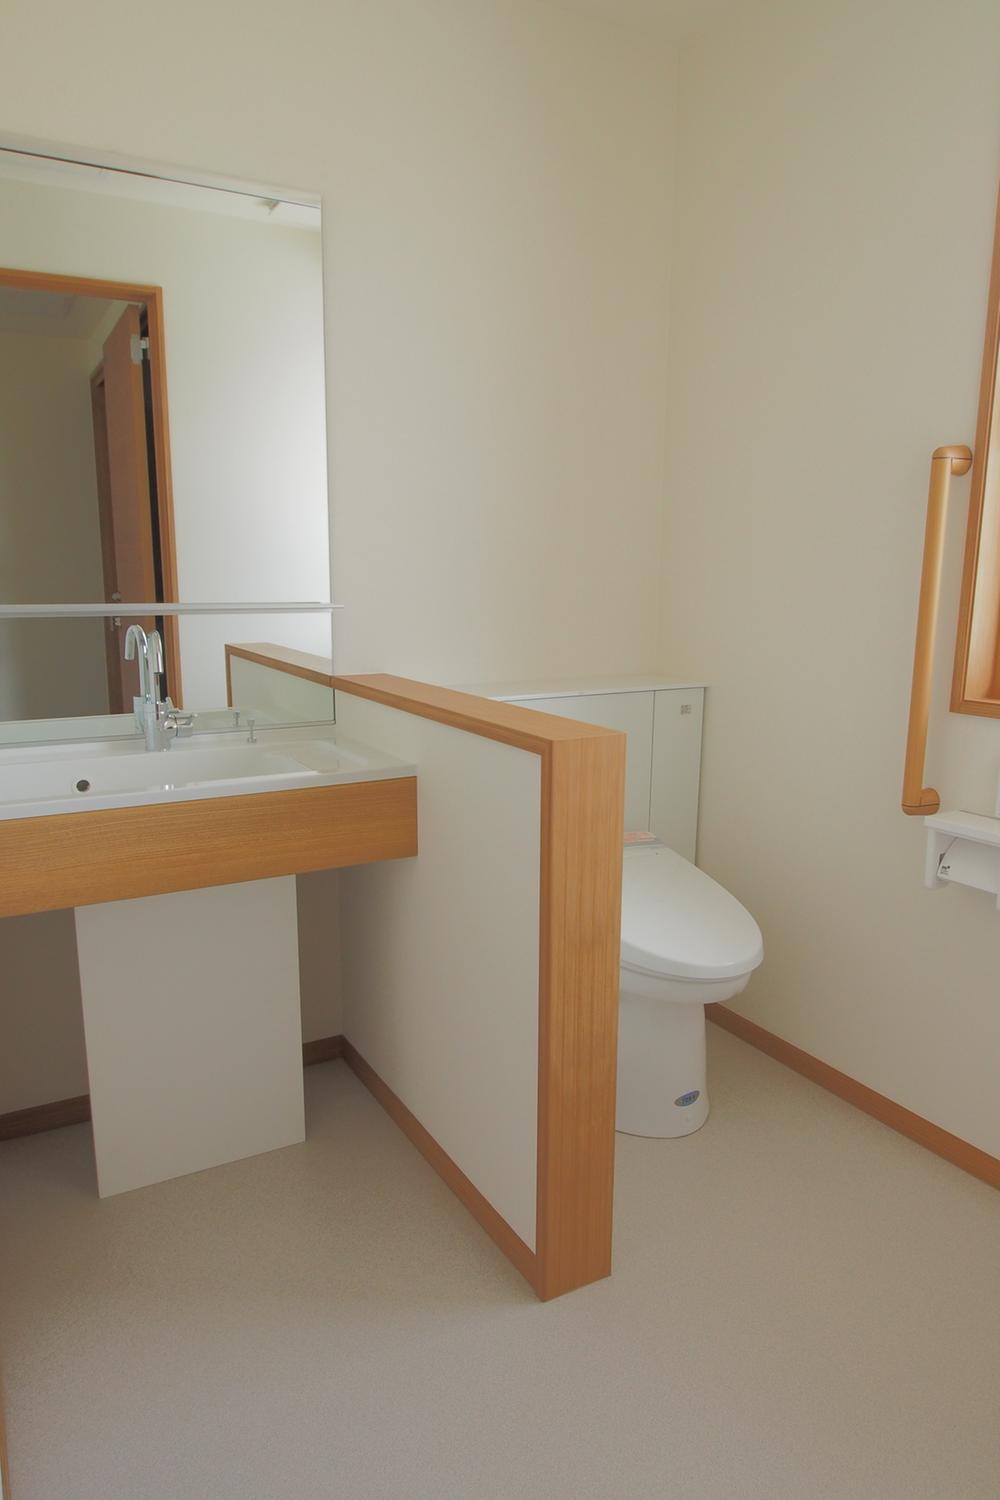 Toilet. Second floor of vanity & toilet